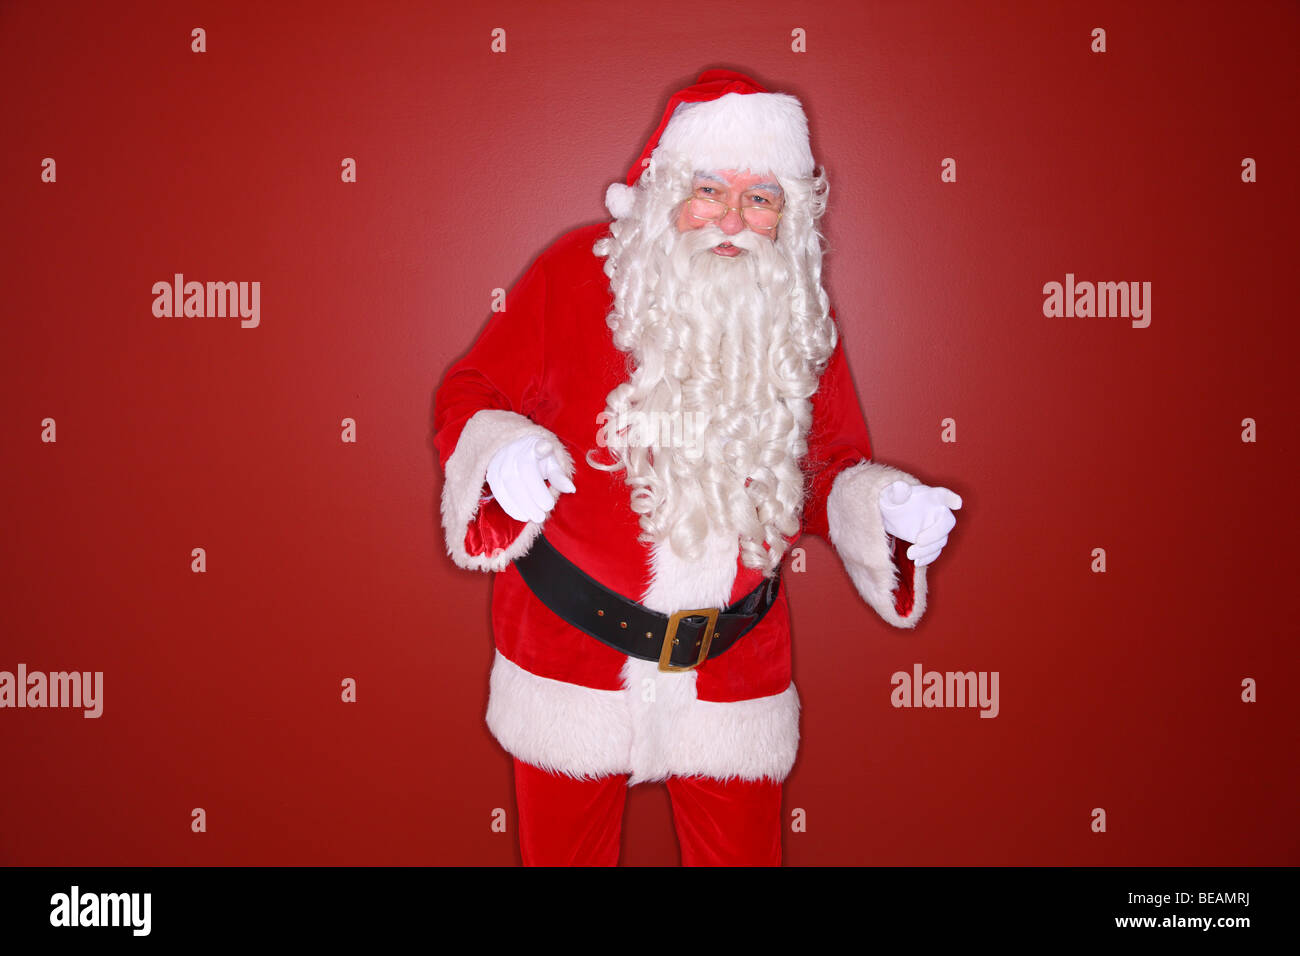 Ring-Flash-Schuss von Santa Claus tanzen Stockfoto